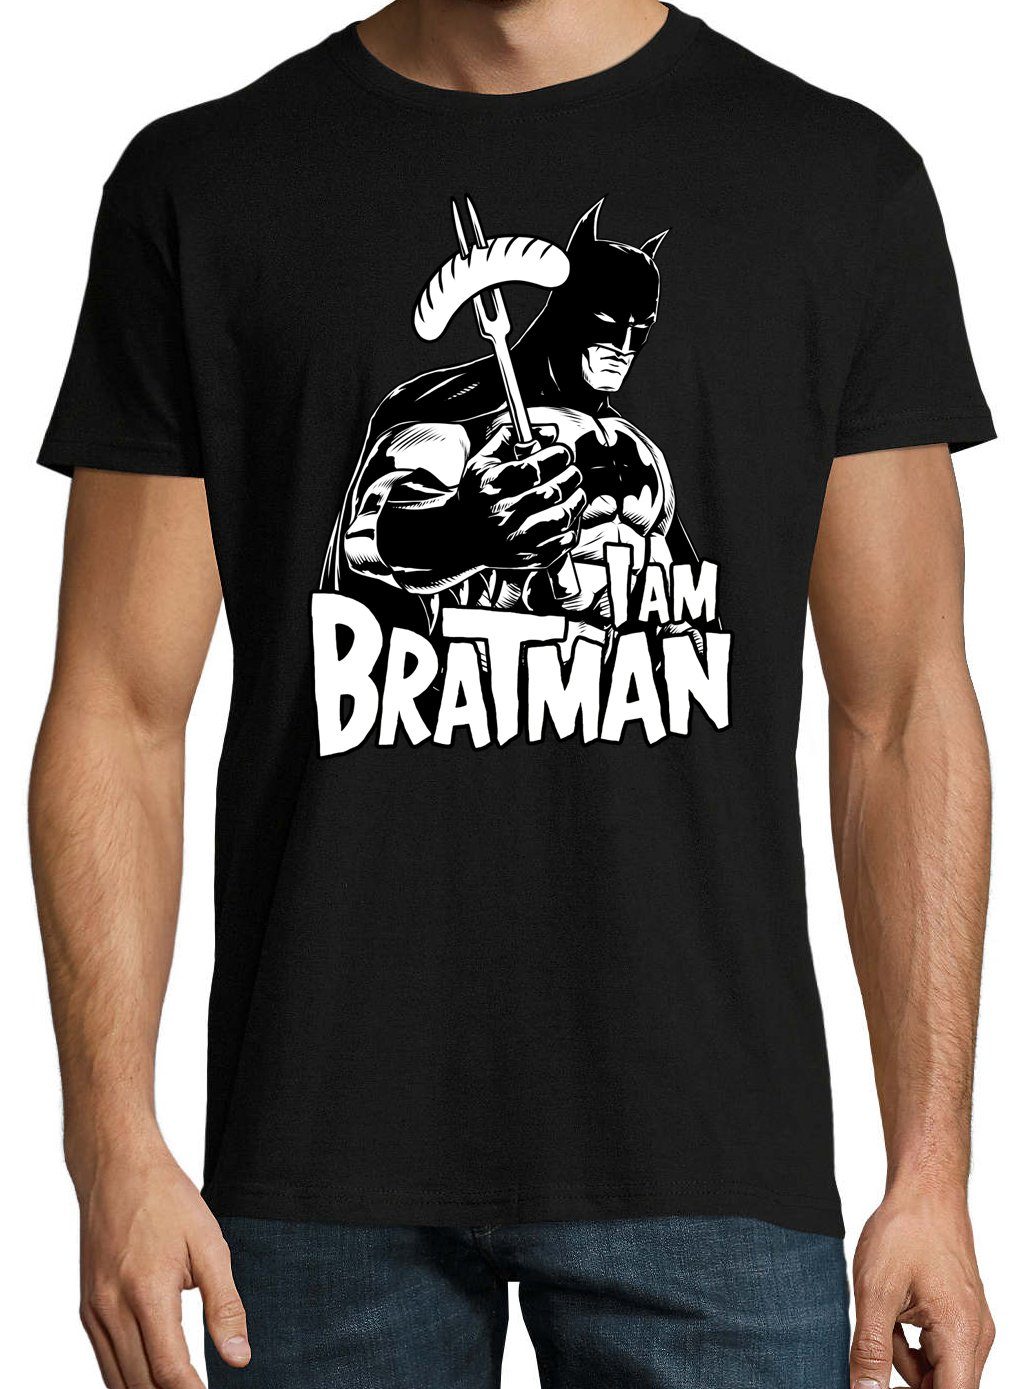 Bratman mit T-Shirt lustigem T-Shirt Designz Schwarz Spruch Herren Youth